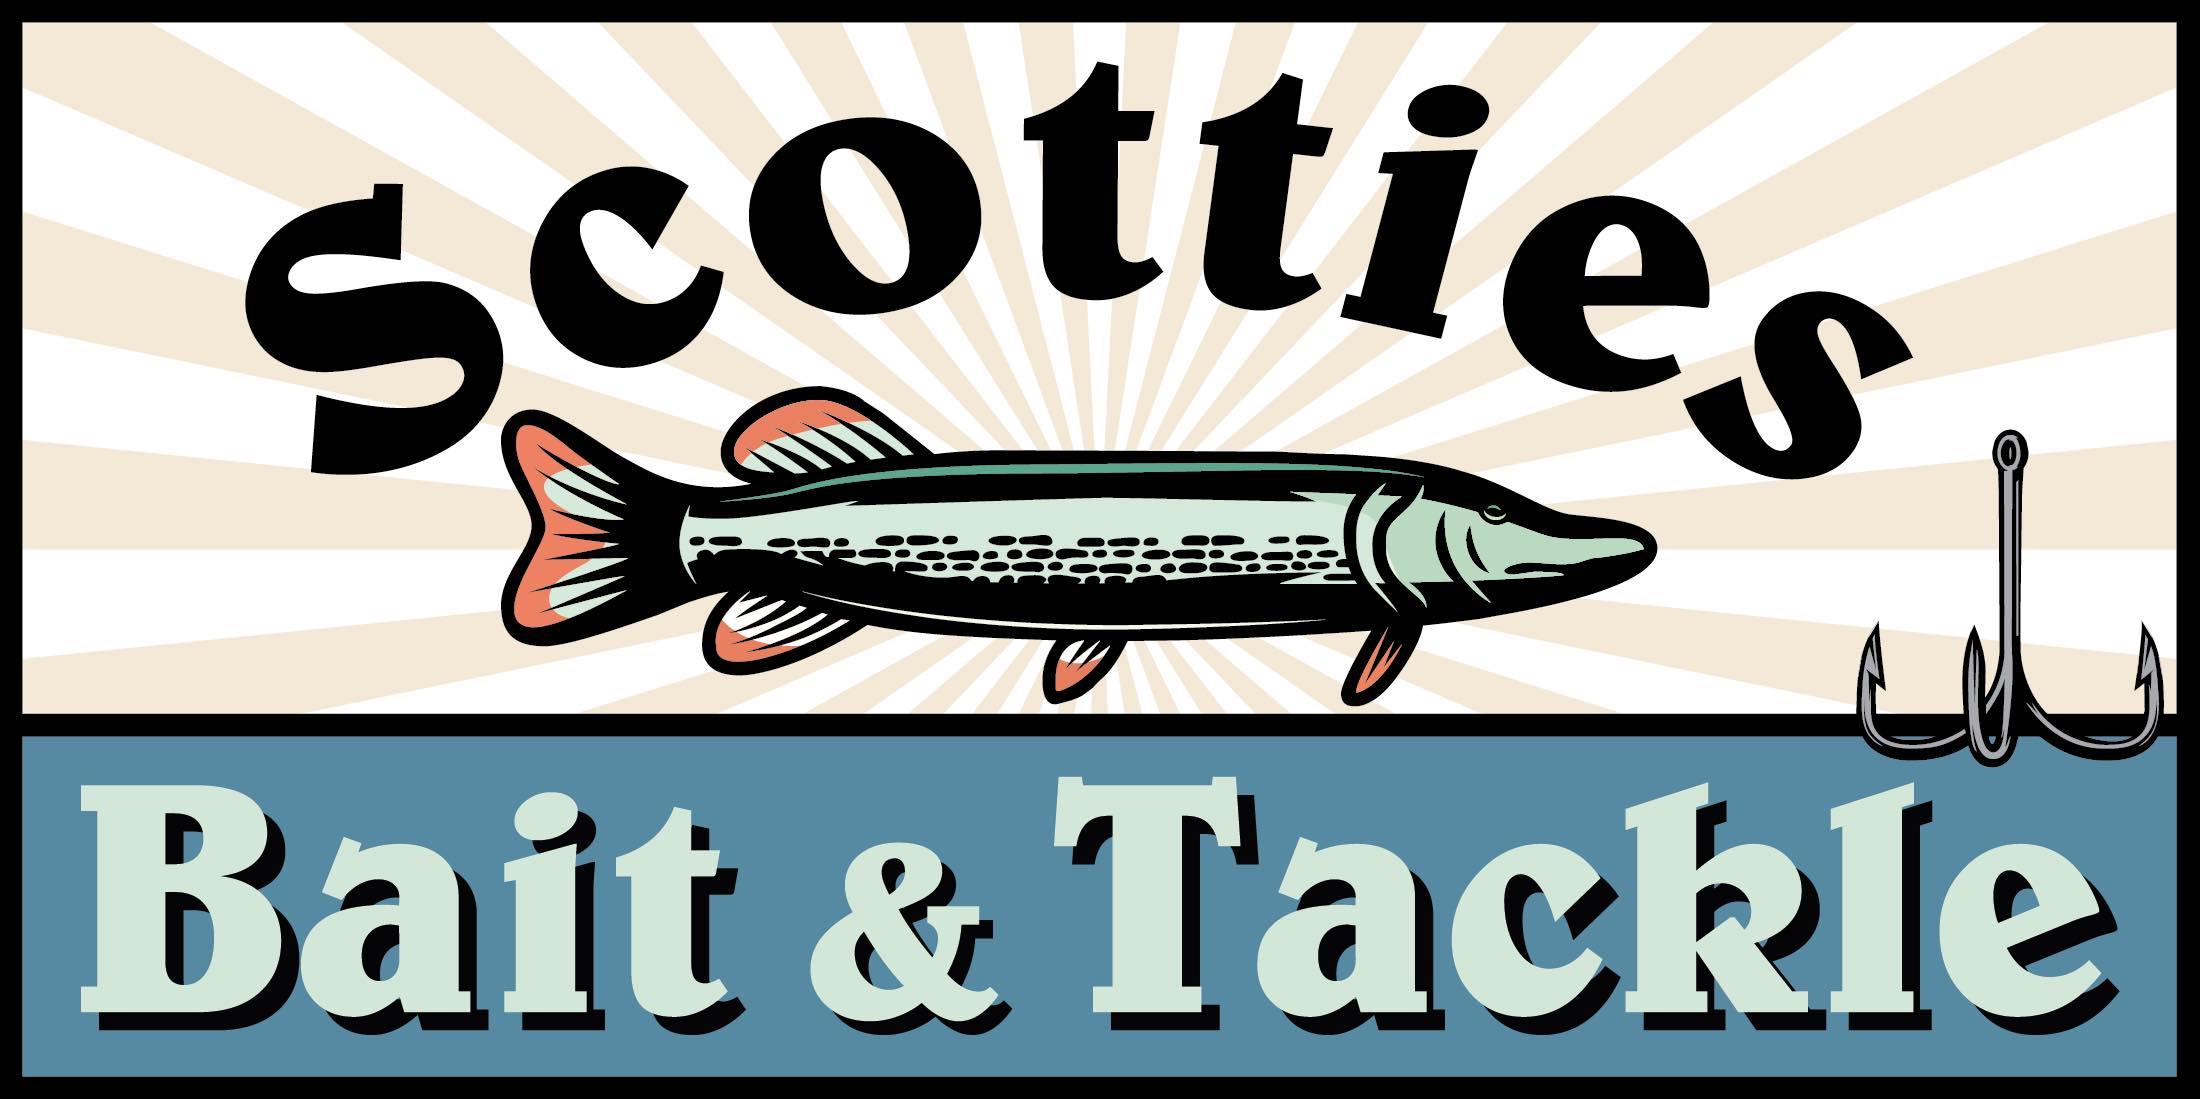 Scottie's Bait & Tackle